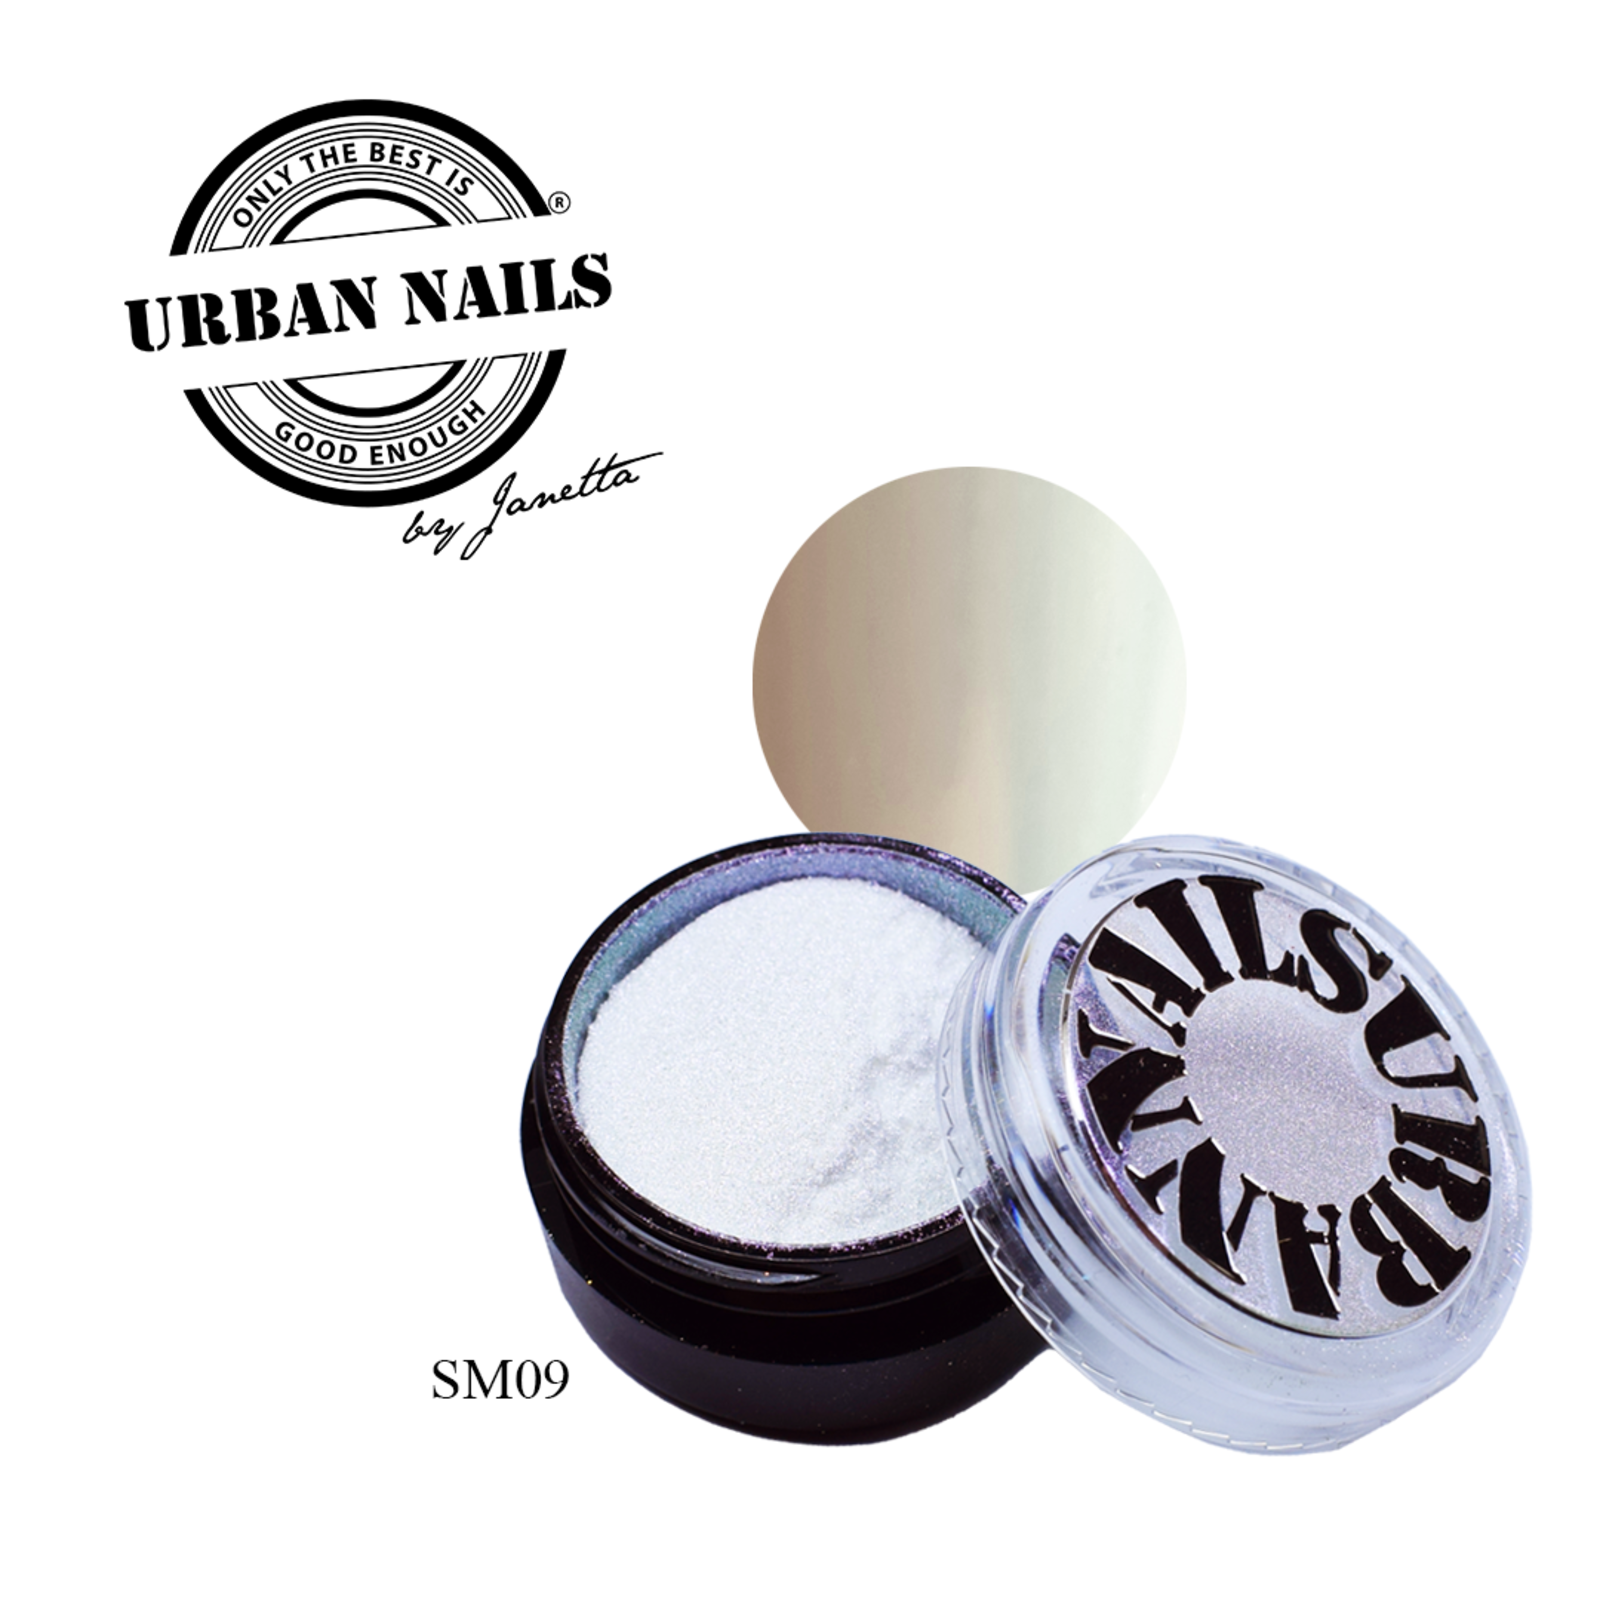 Urban nails Super Mirror Pigment SM09